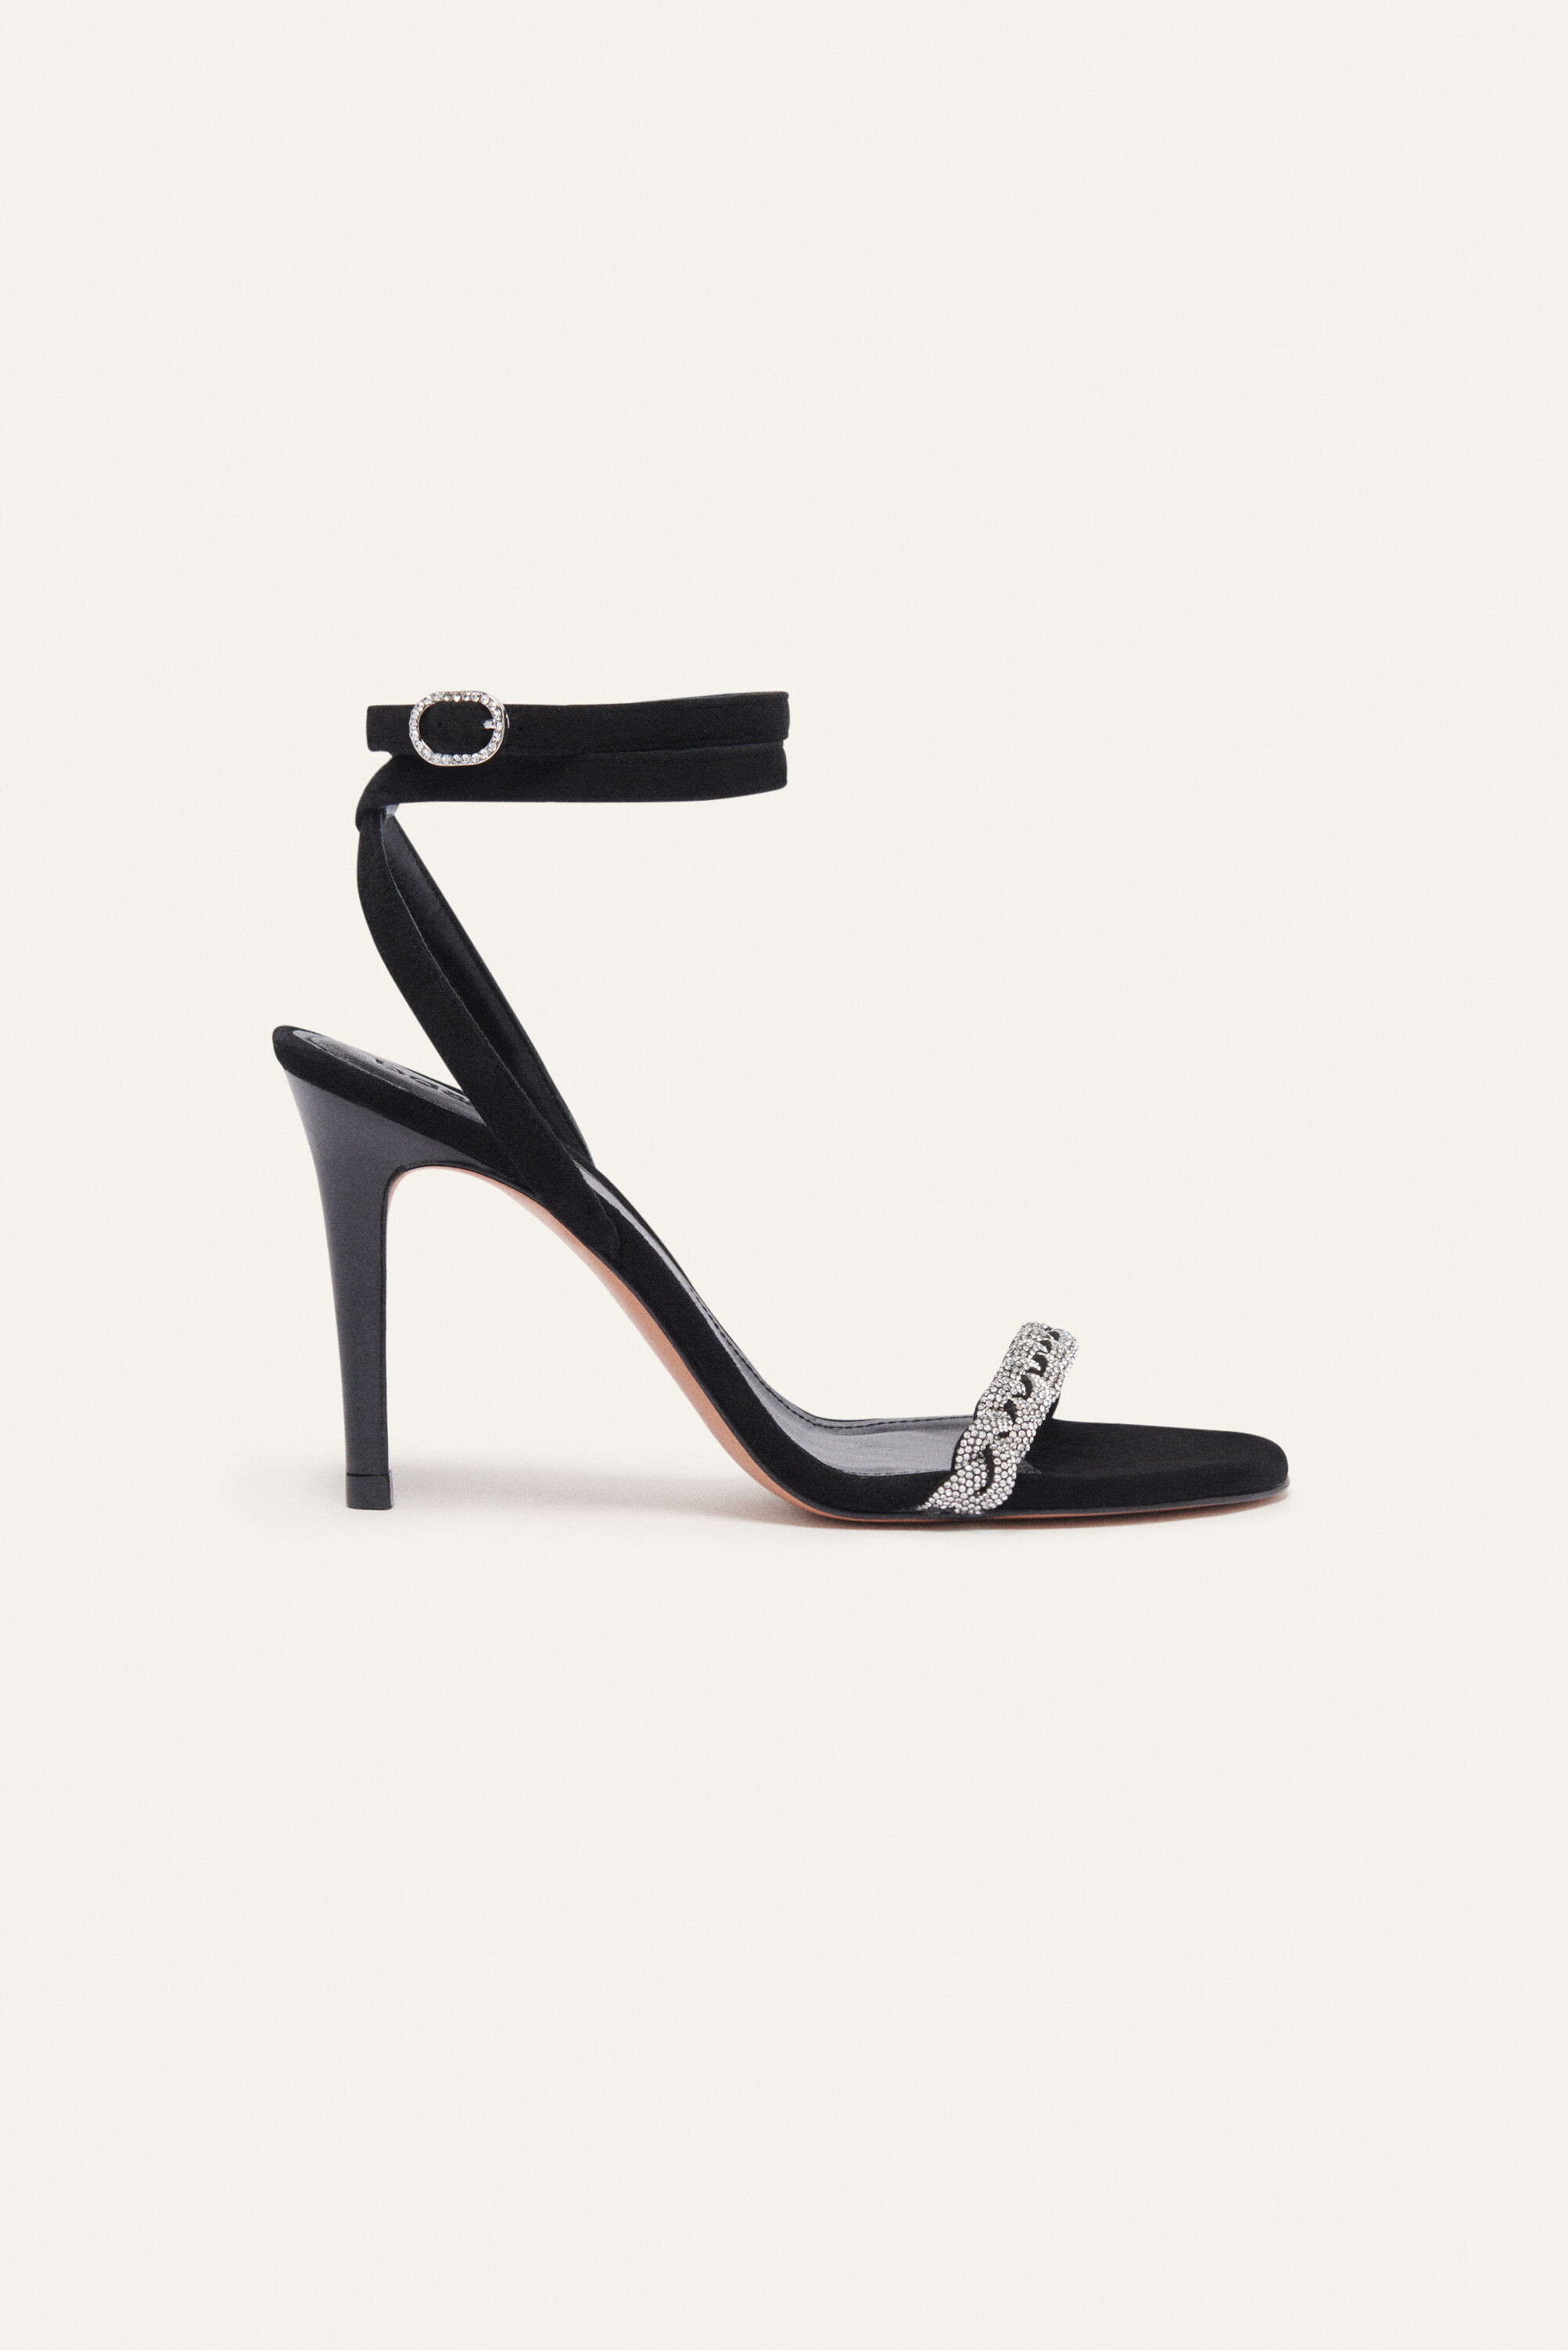 LYNLEY Black Strappy Square Toe Sandal | Women's Sandals – Steve Madden